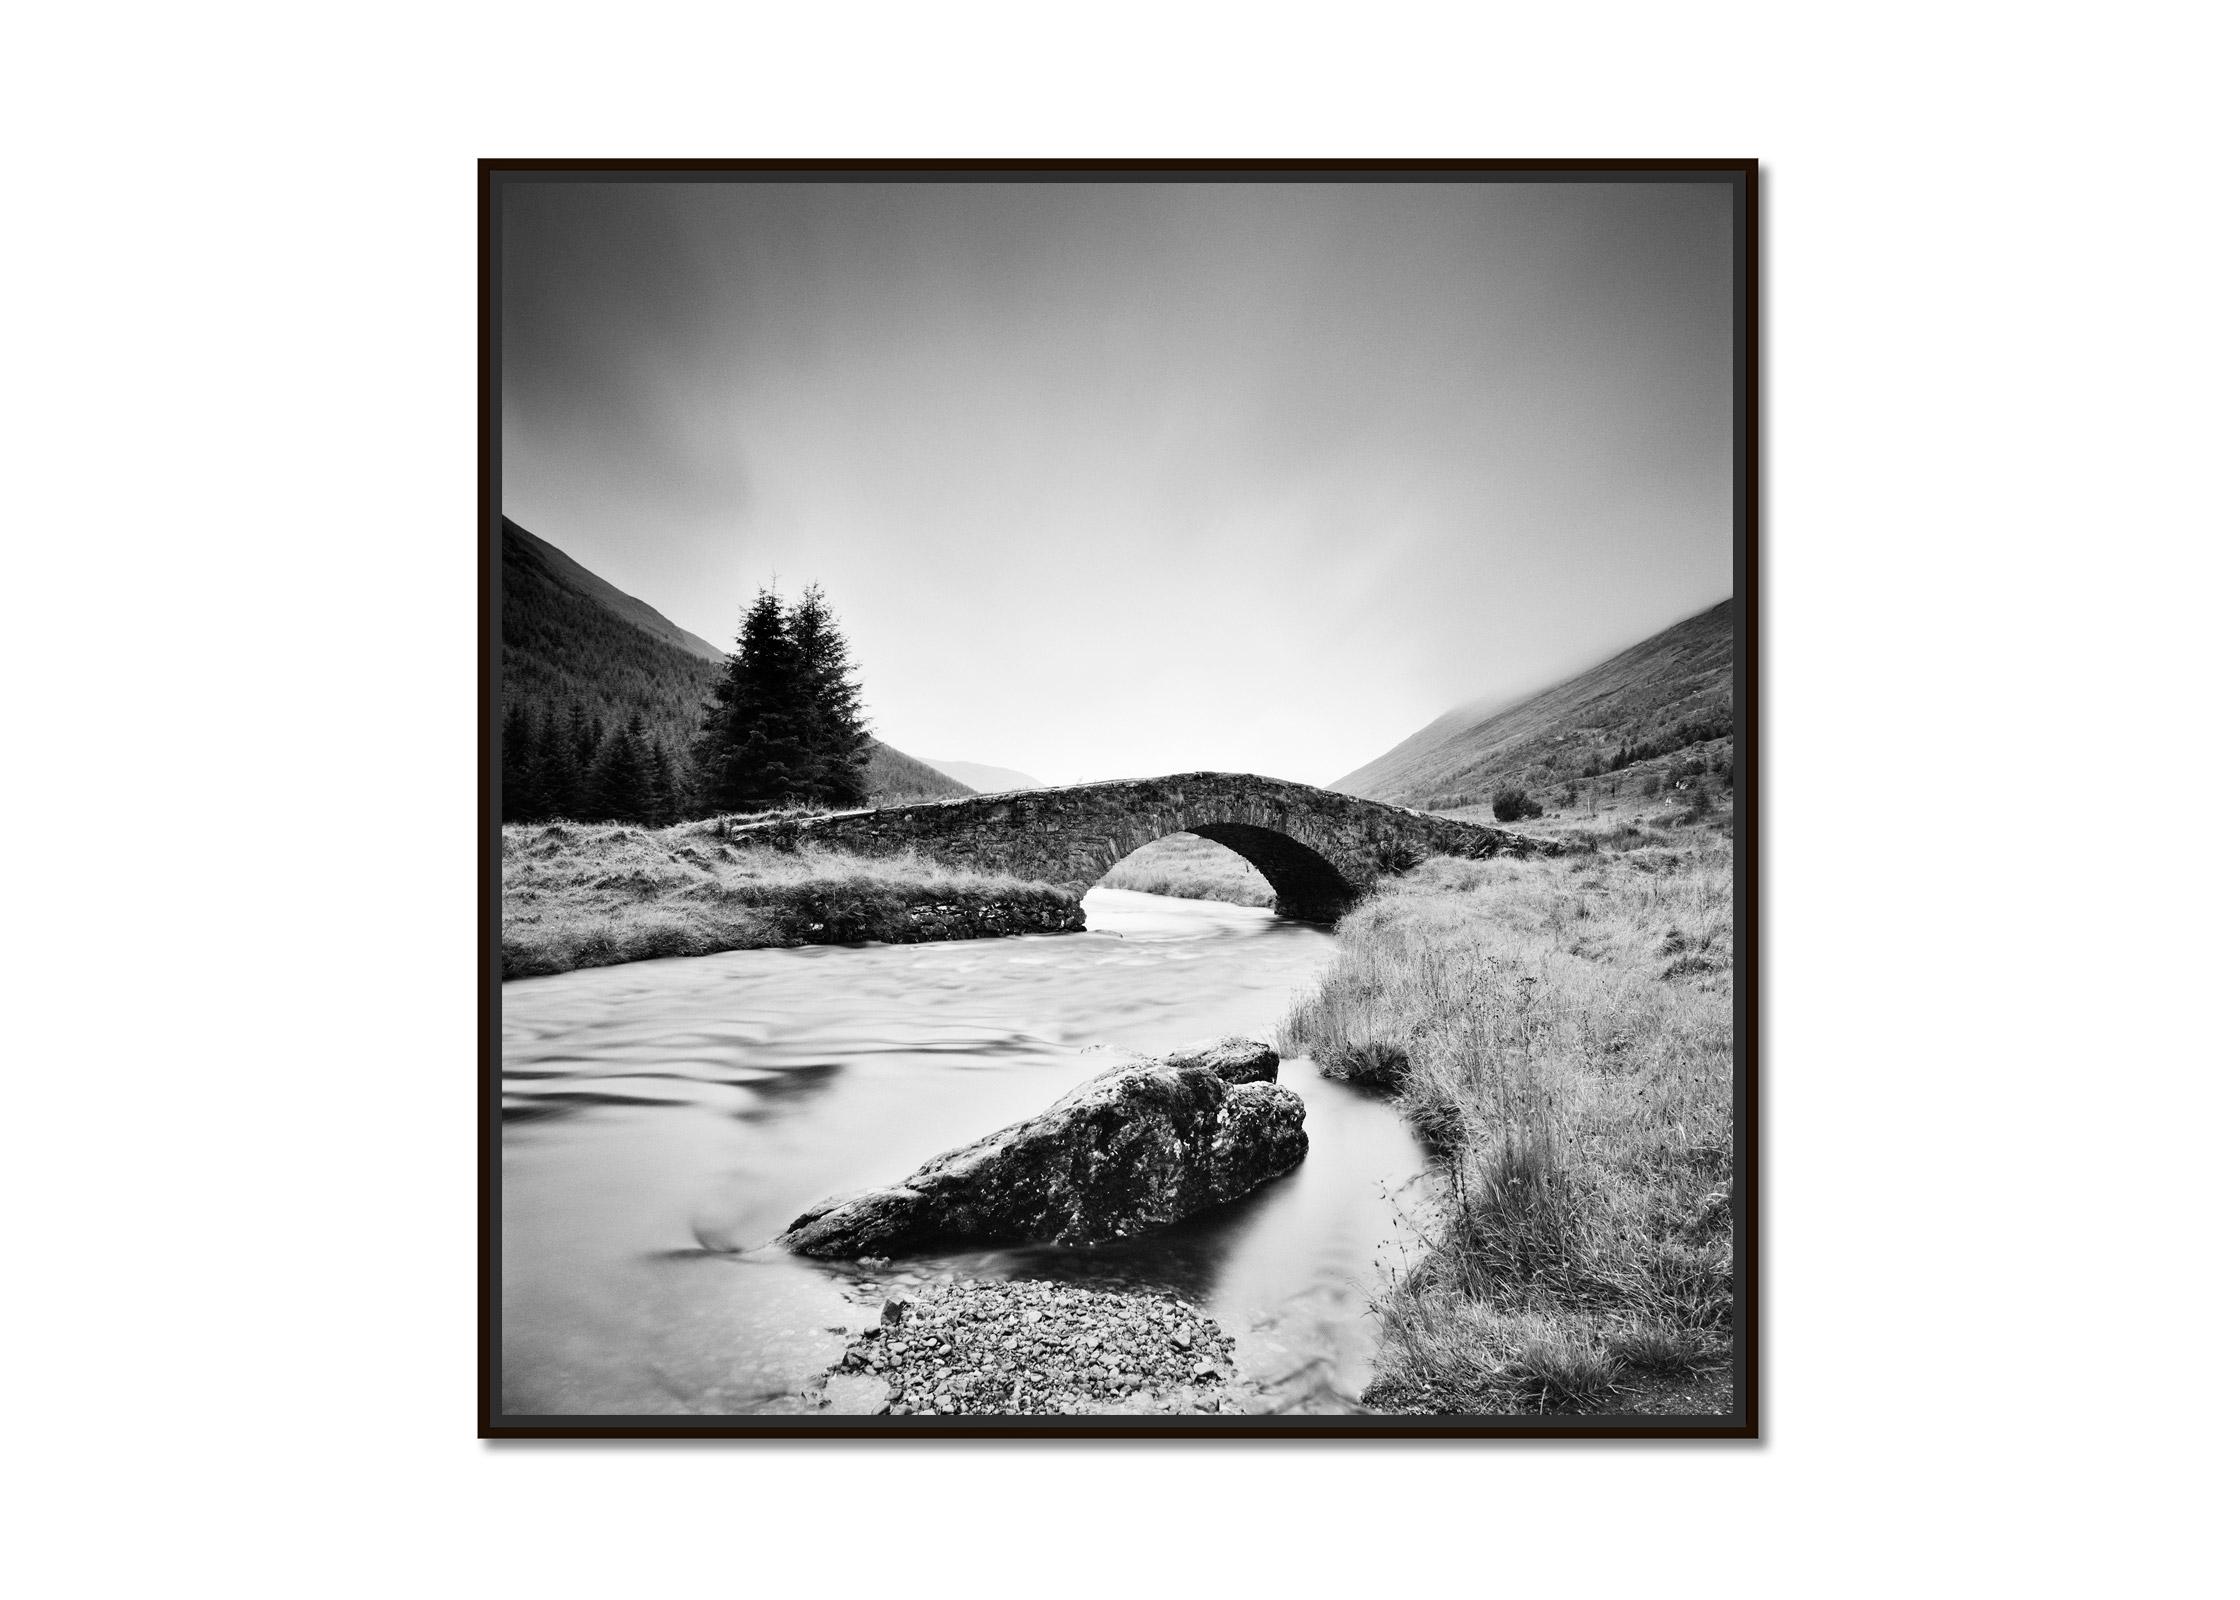 Stone Bridge, Highlands, Schottland, Schwarz-Weiß-Landschaftsfotografie – Photograph von Gerald Berghammer